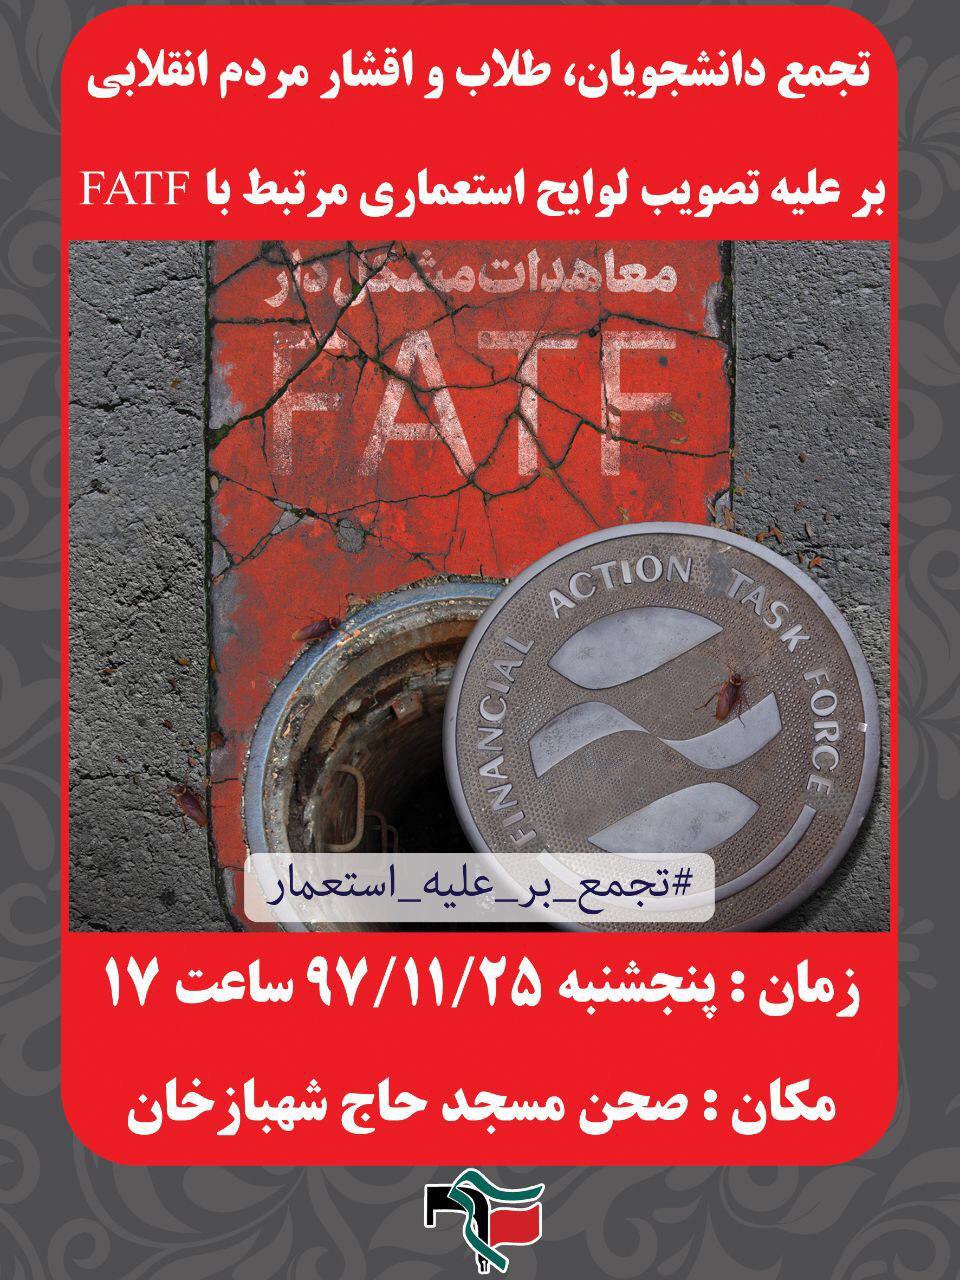 قطار مخالفت‌ها با FATF به کرمانشاه رسید/ چاهی که بعد از چاله برجام به آن خواهیم افتاد!